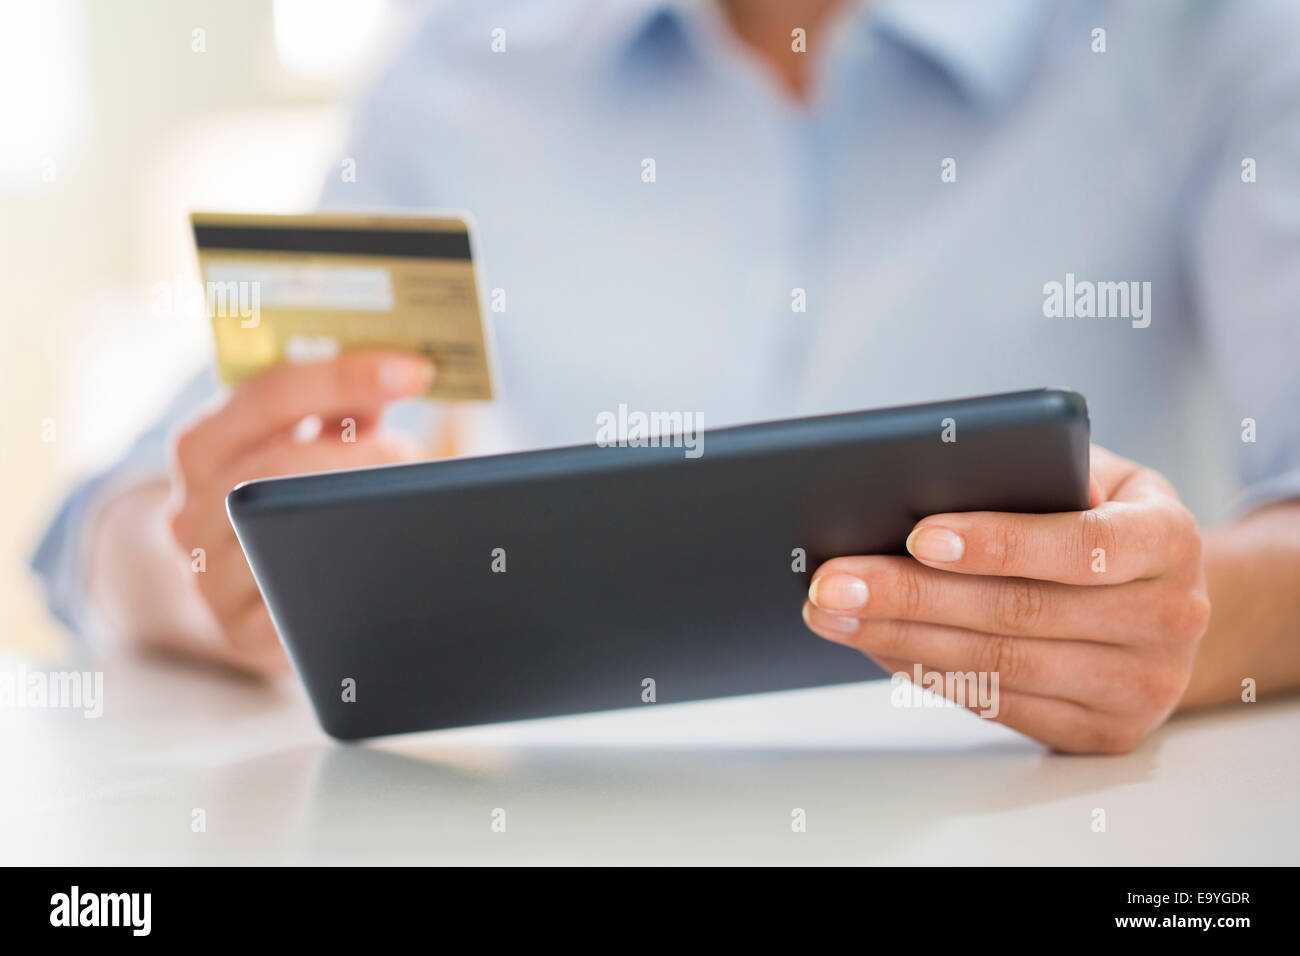 Le projet de loi bancaire Carte de crédit ordinateur commerce caucasienne ecommerce numérique finances hand holding accueil clavier internet Banque D'Images